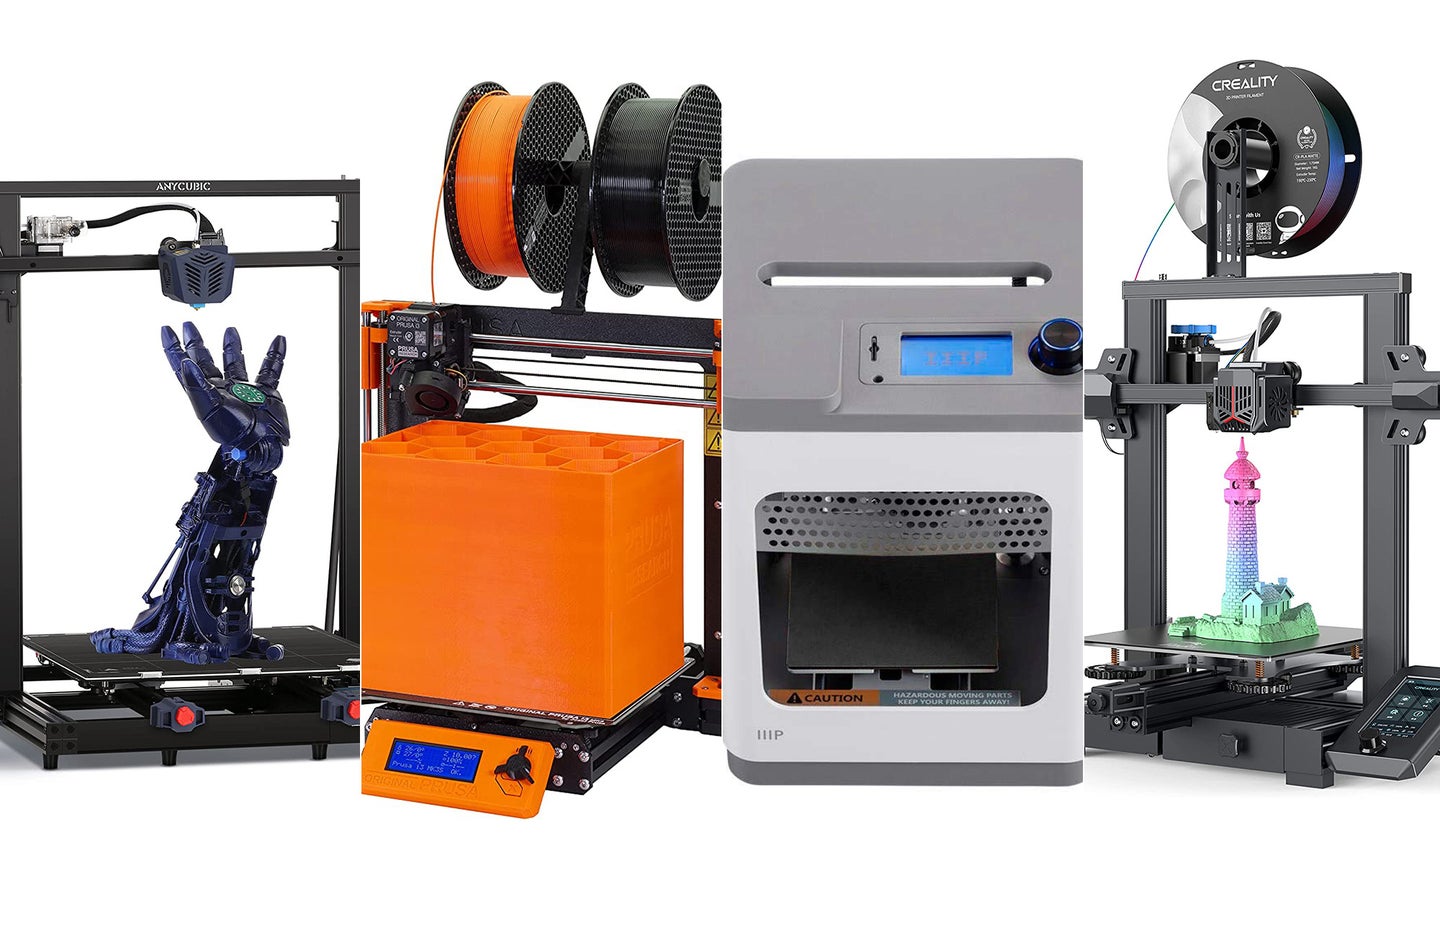 impliciet Harnas Onbelangrijk The best 3D printers for beginners | Popular Science